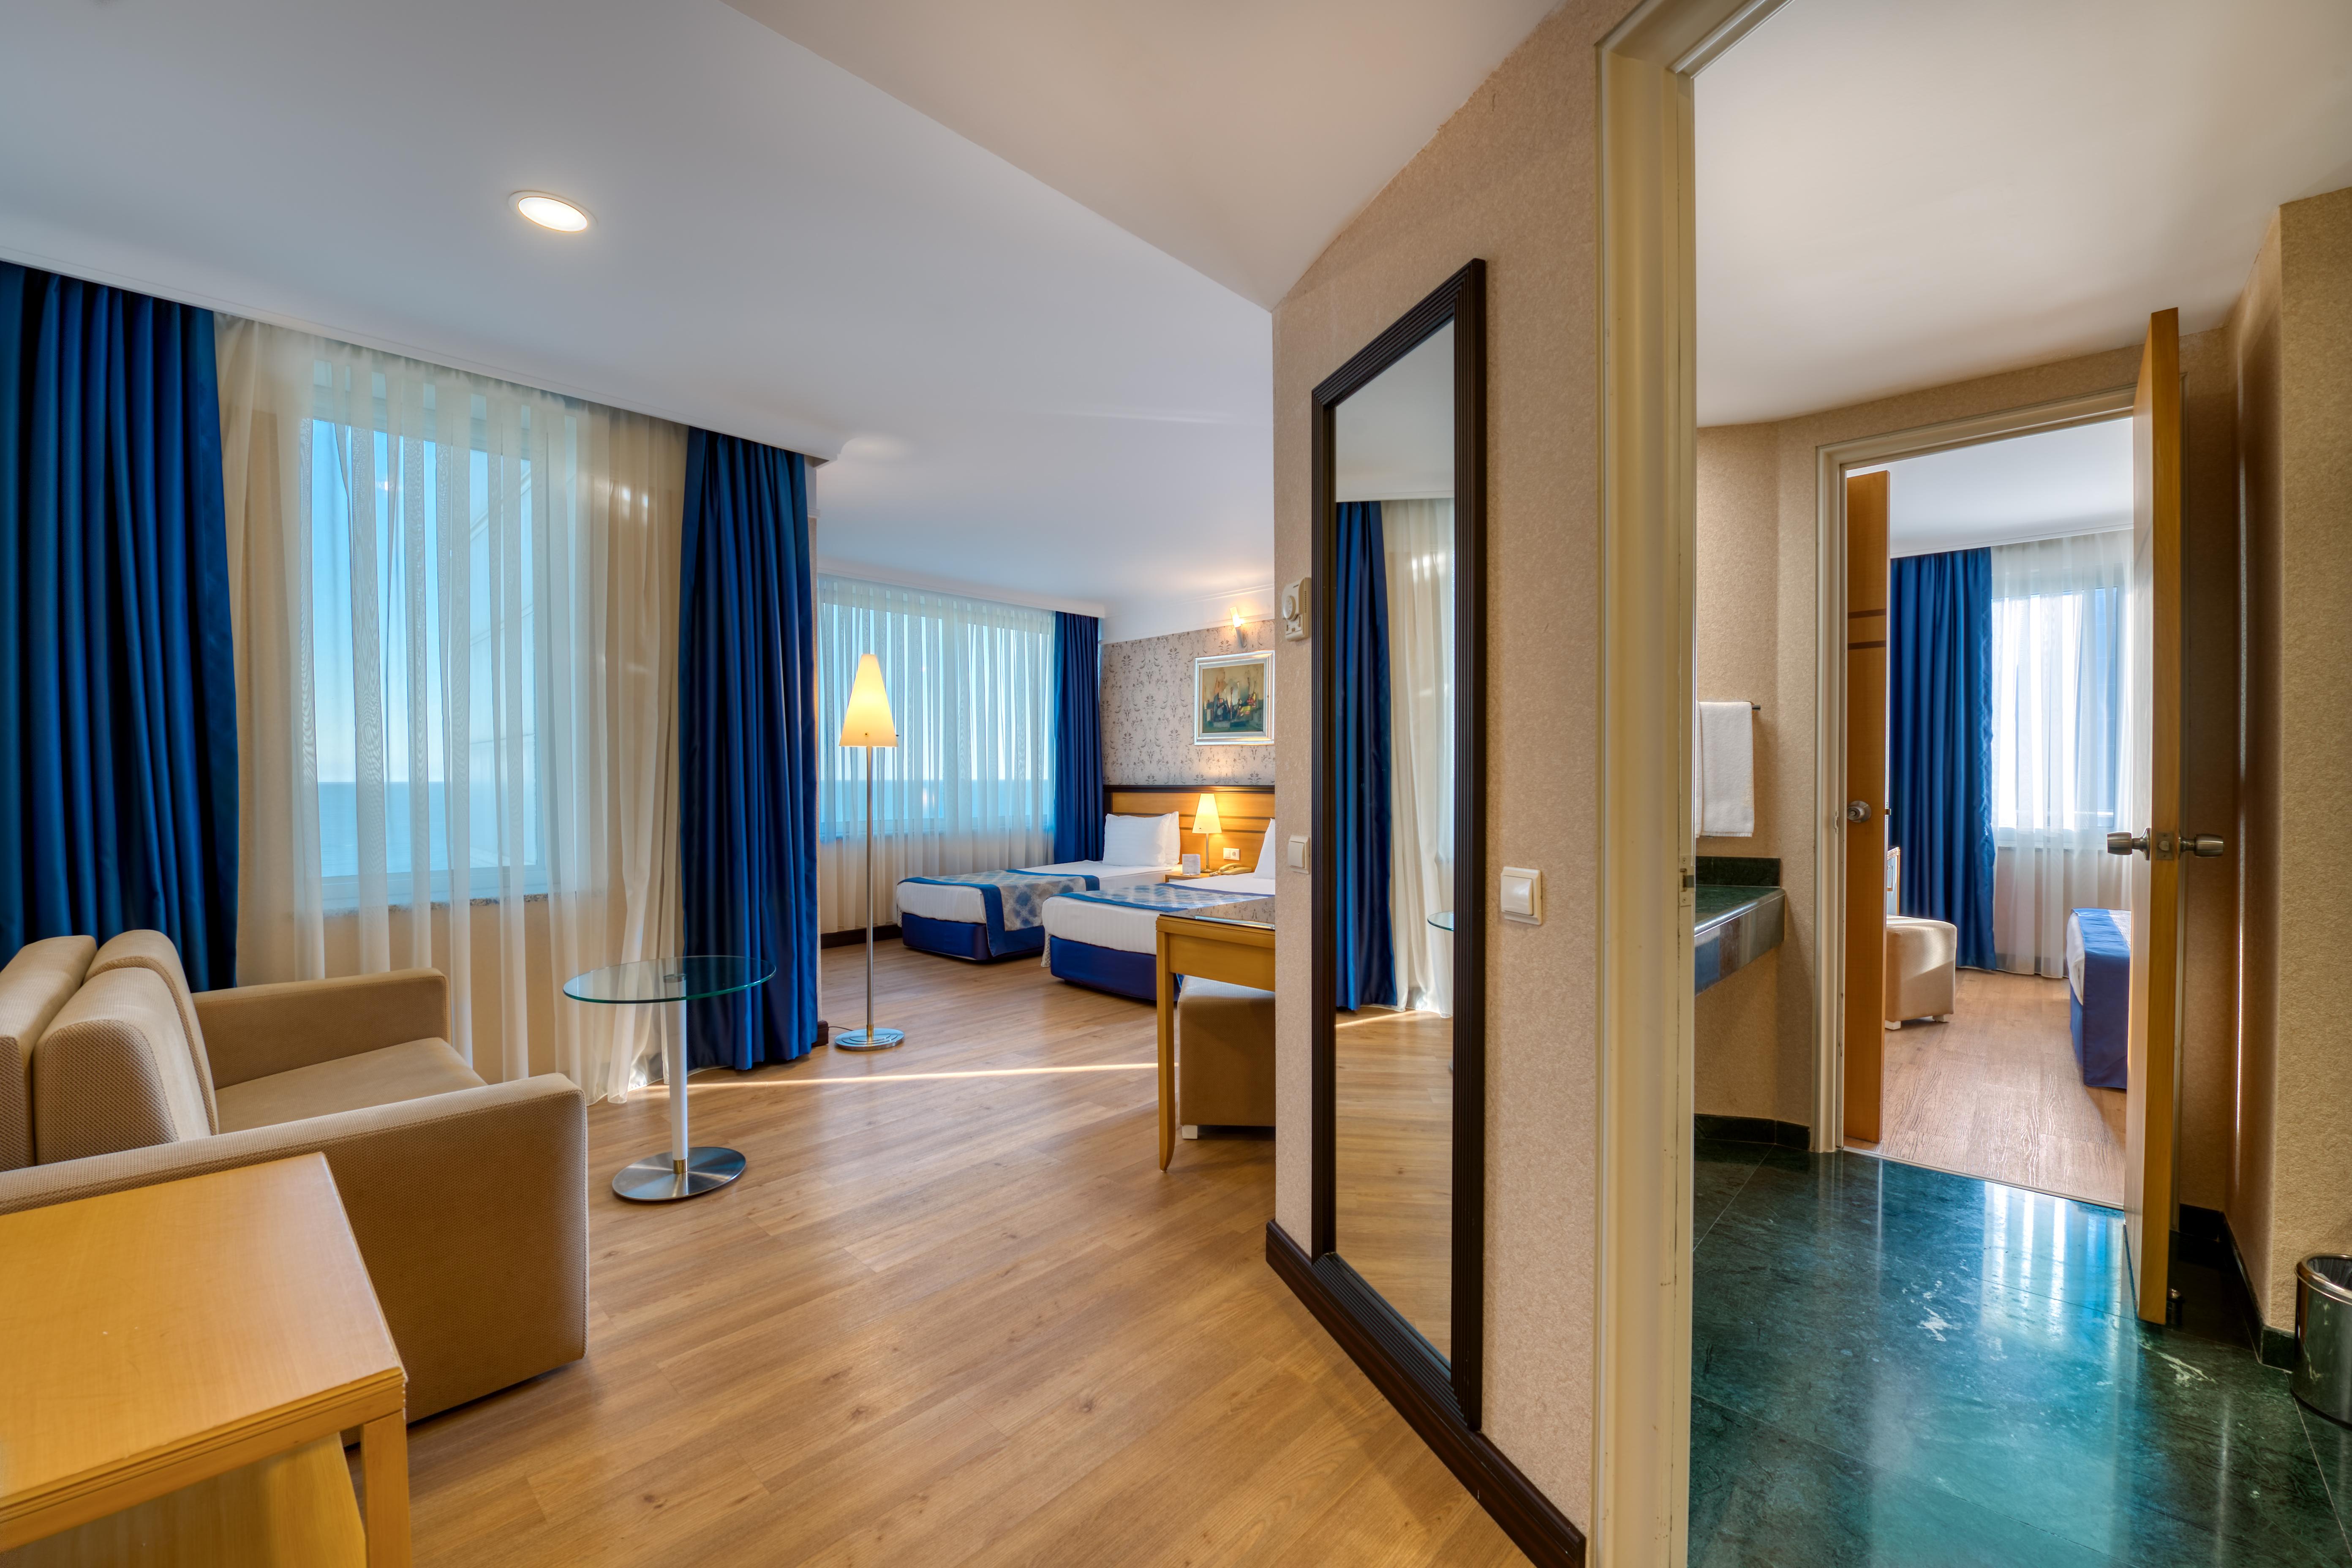 Porto bello hotel resort